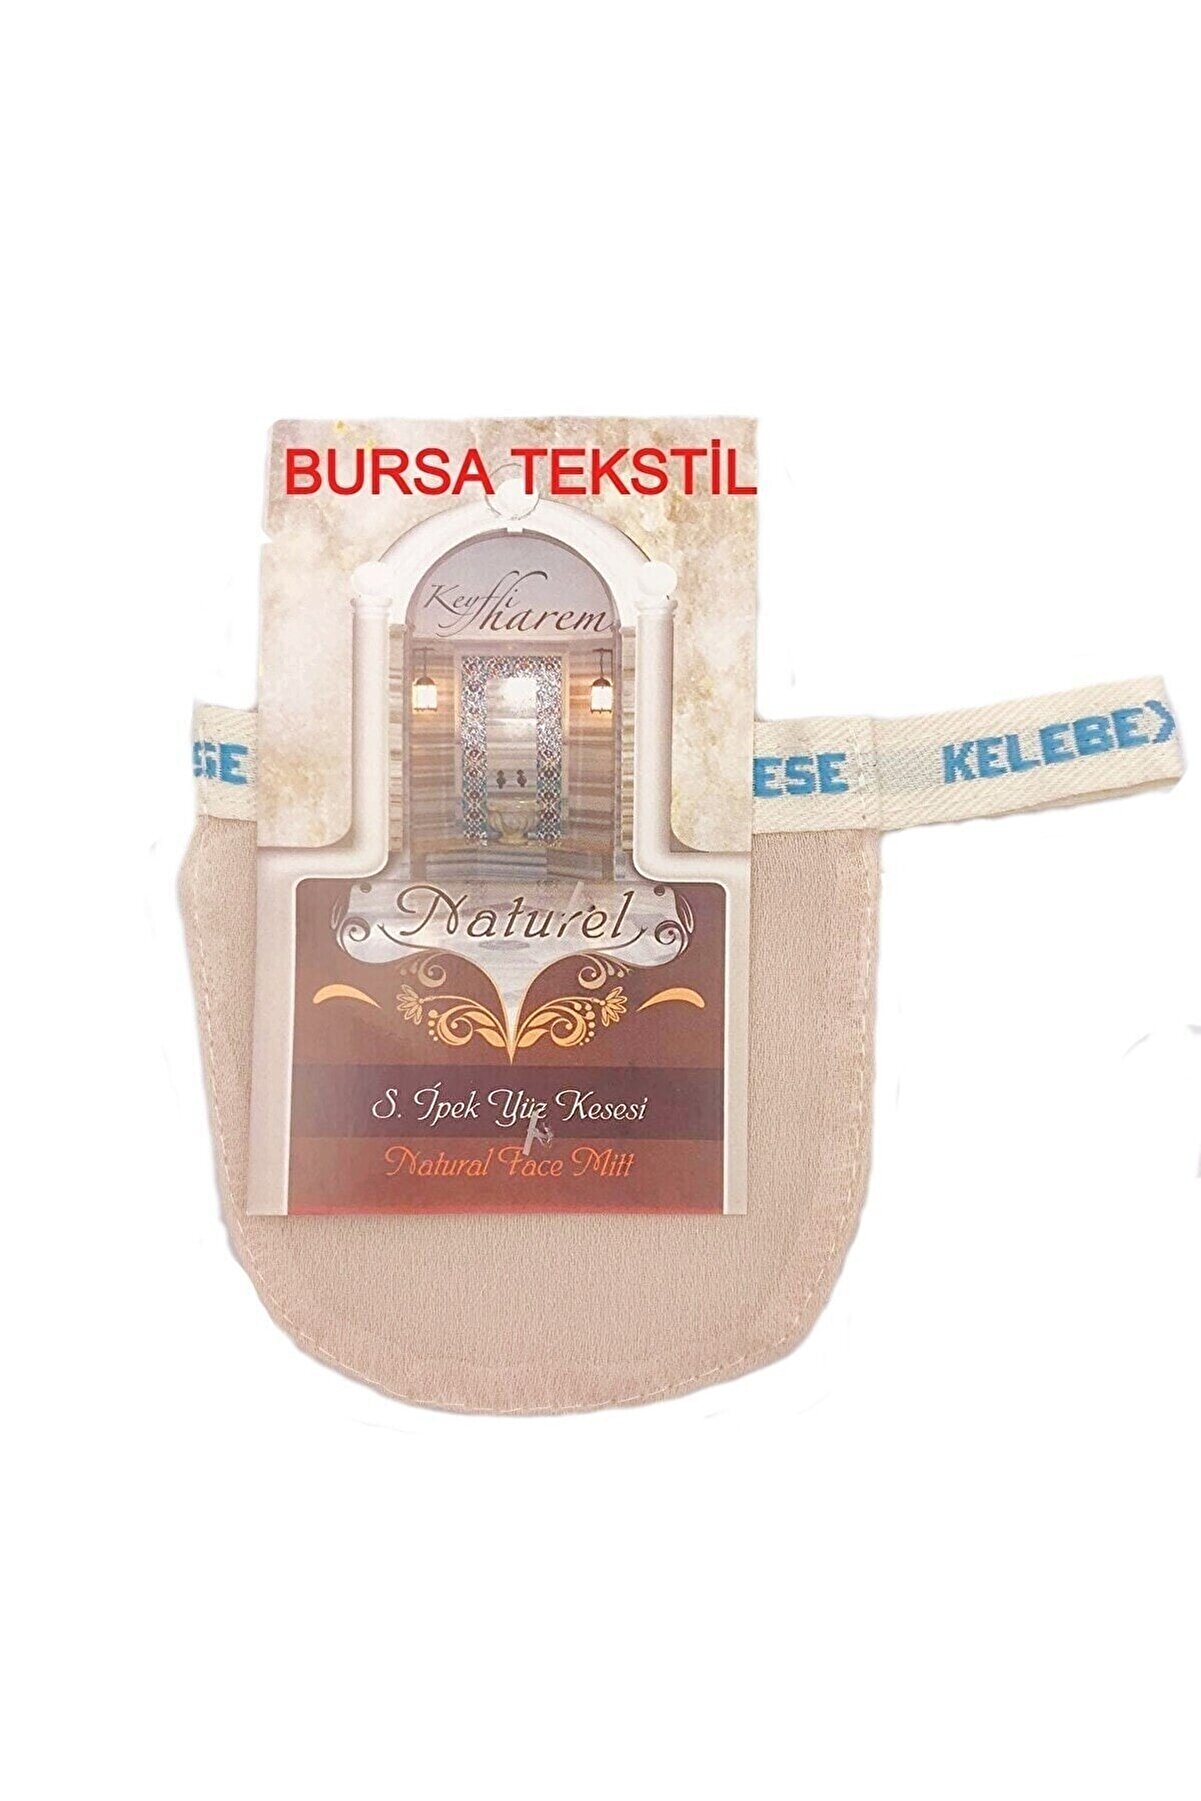 Bursa Tekstil Bursa Organik Ponza Taşı / Topuk Taşı & Ipek Kese